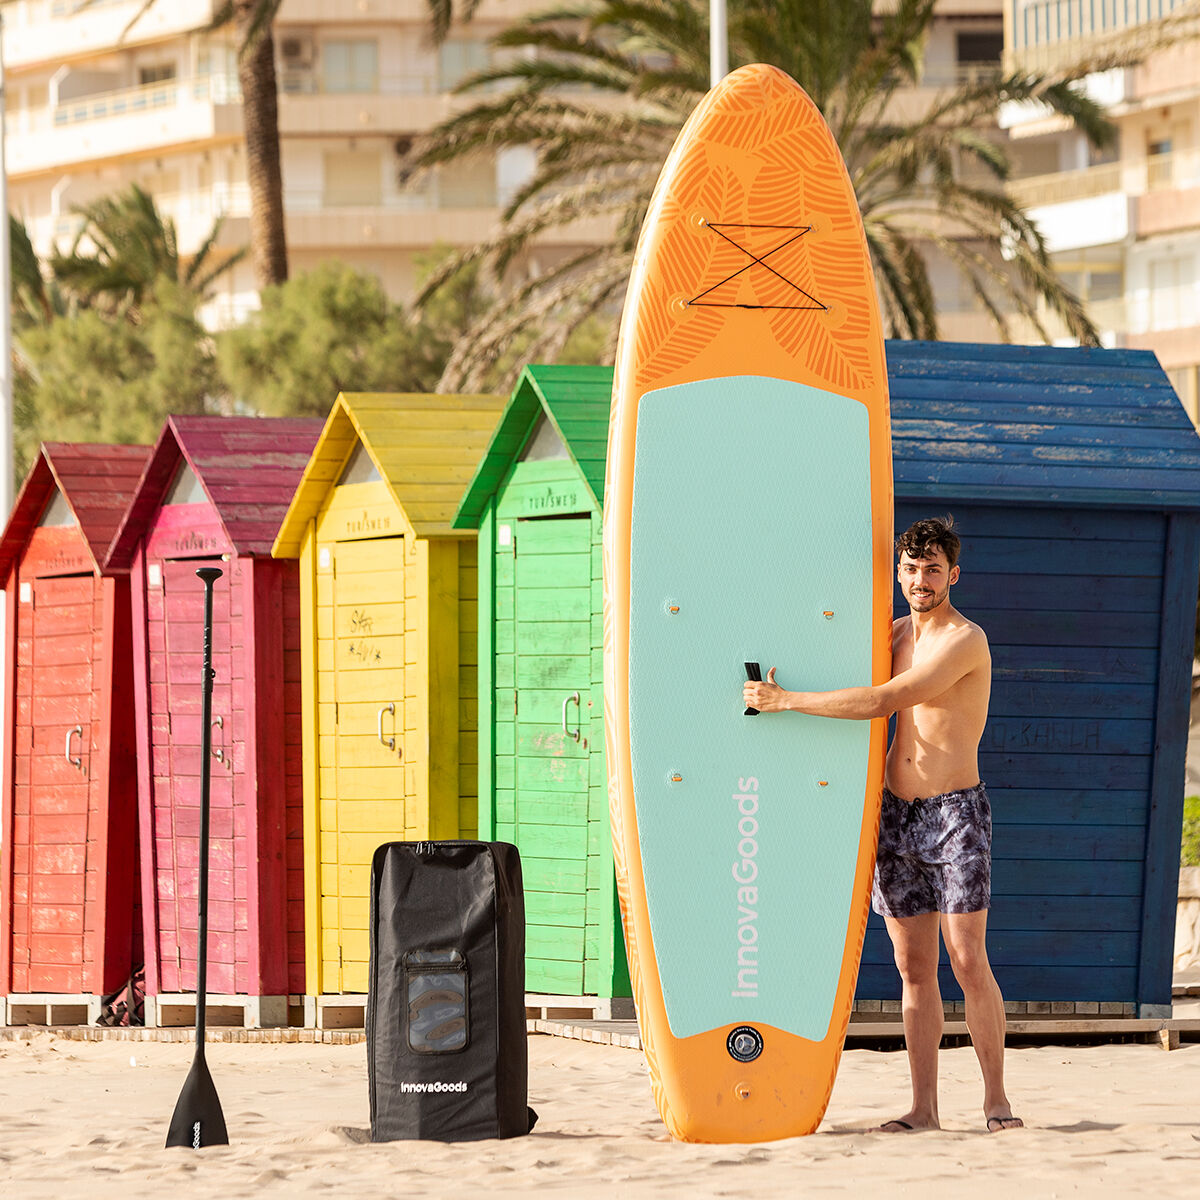 2-i-1 Oppblåsbart Paddle Surf Board med sete og tilbehør Siros InnovaGoods 10'5" 320 cm